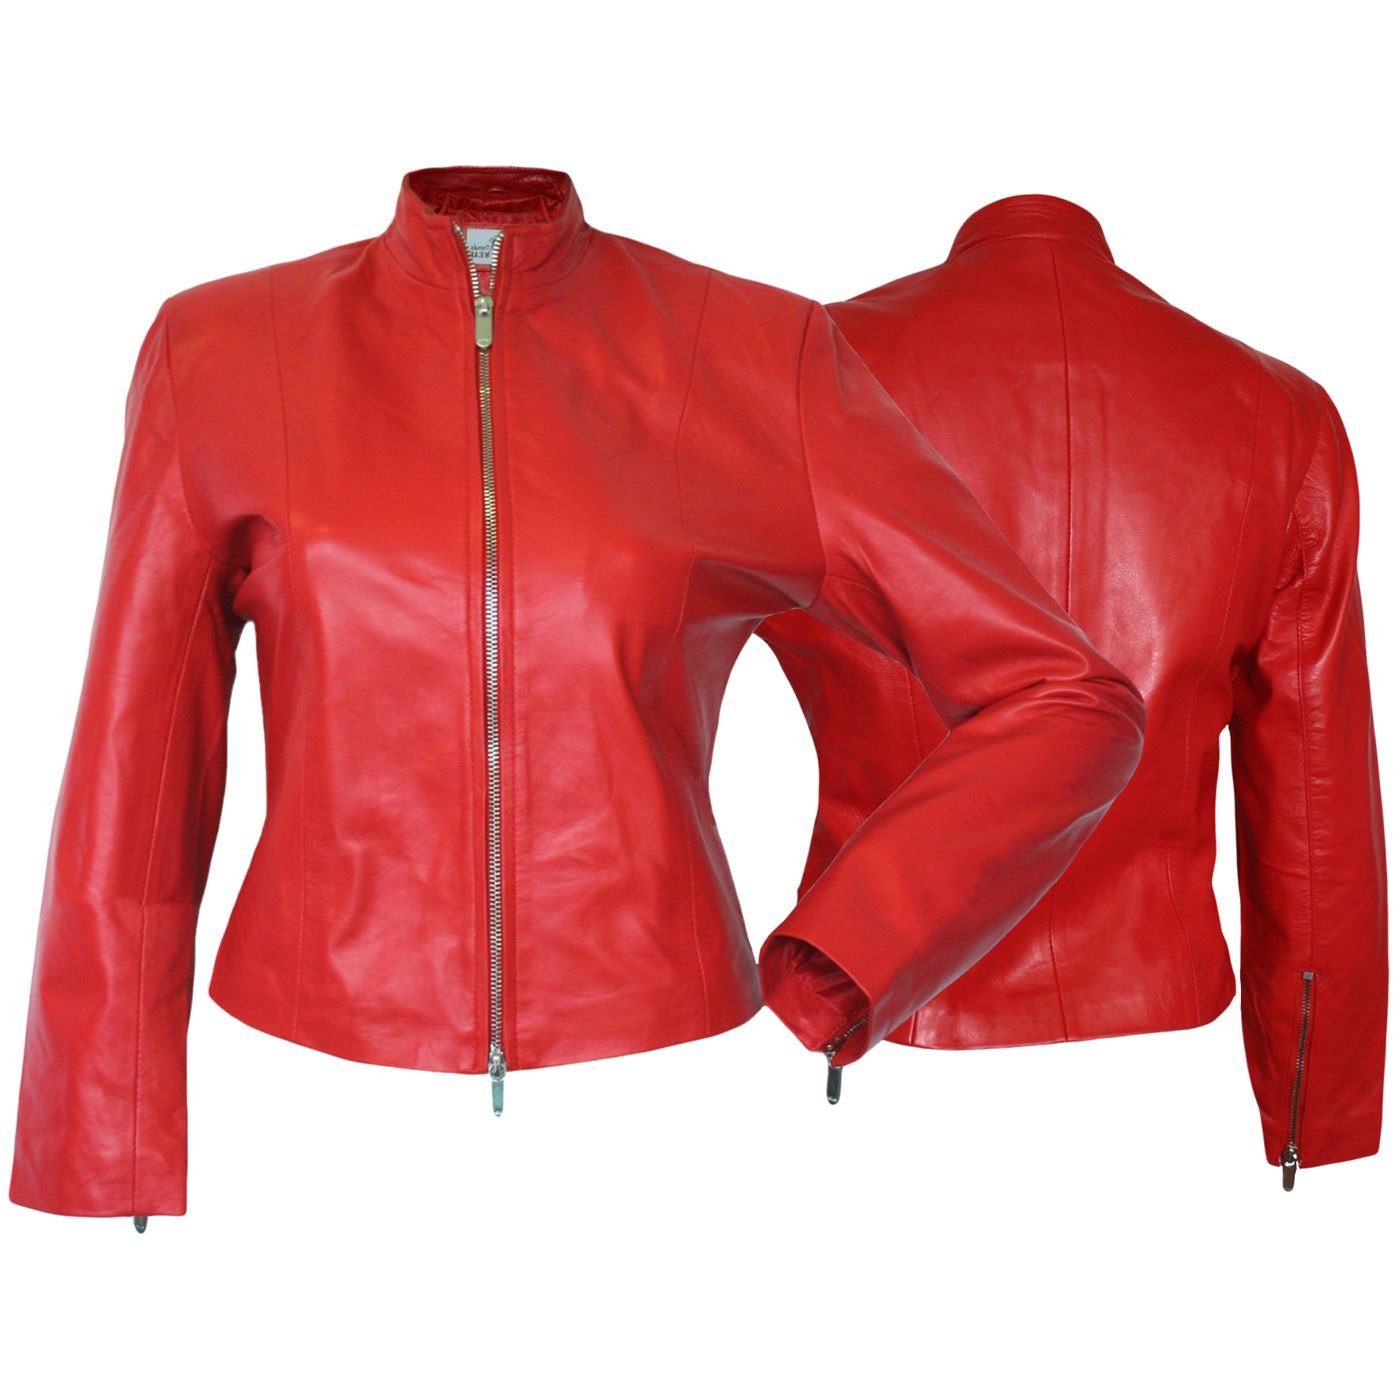 German Wear Lederjacke Trend 419J red Damen Lederjacke Jacke aus Lammnappa Leder Rot